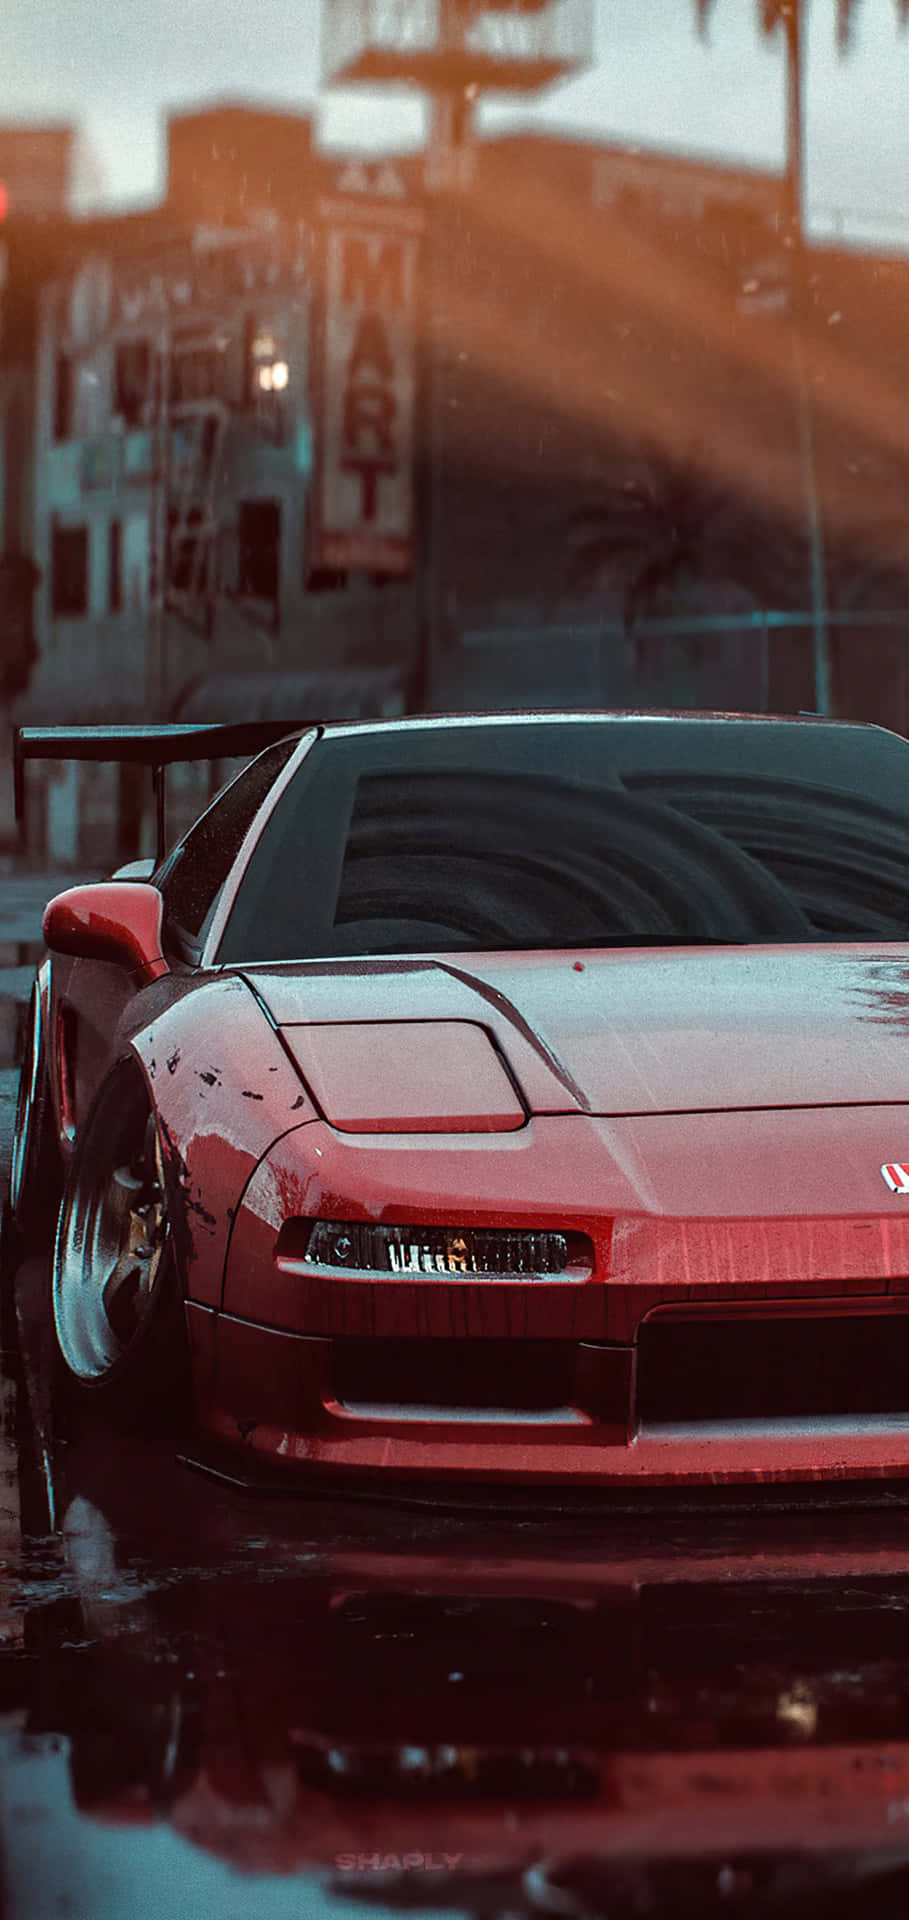 Papelde Parede Para Pixel 3 De Need For Speed Com Fundo Vermelho E Ferrari.